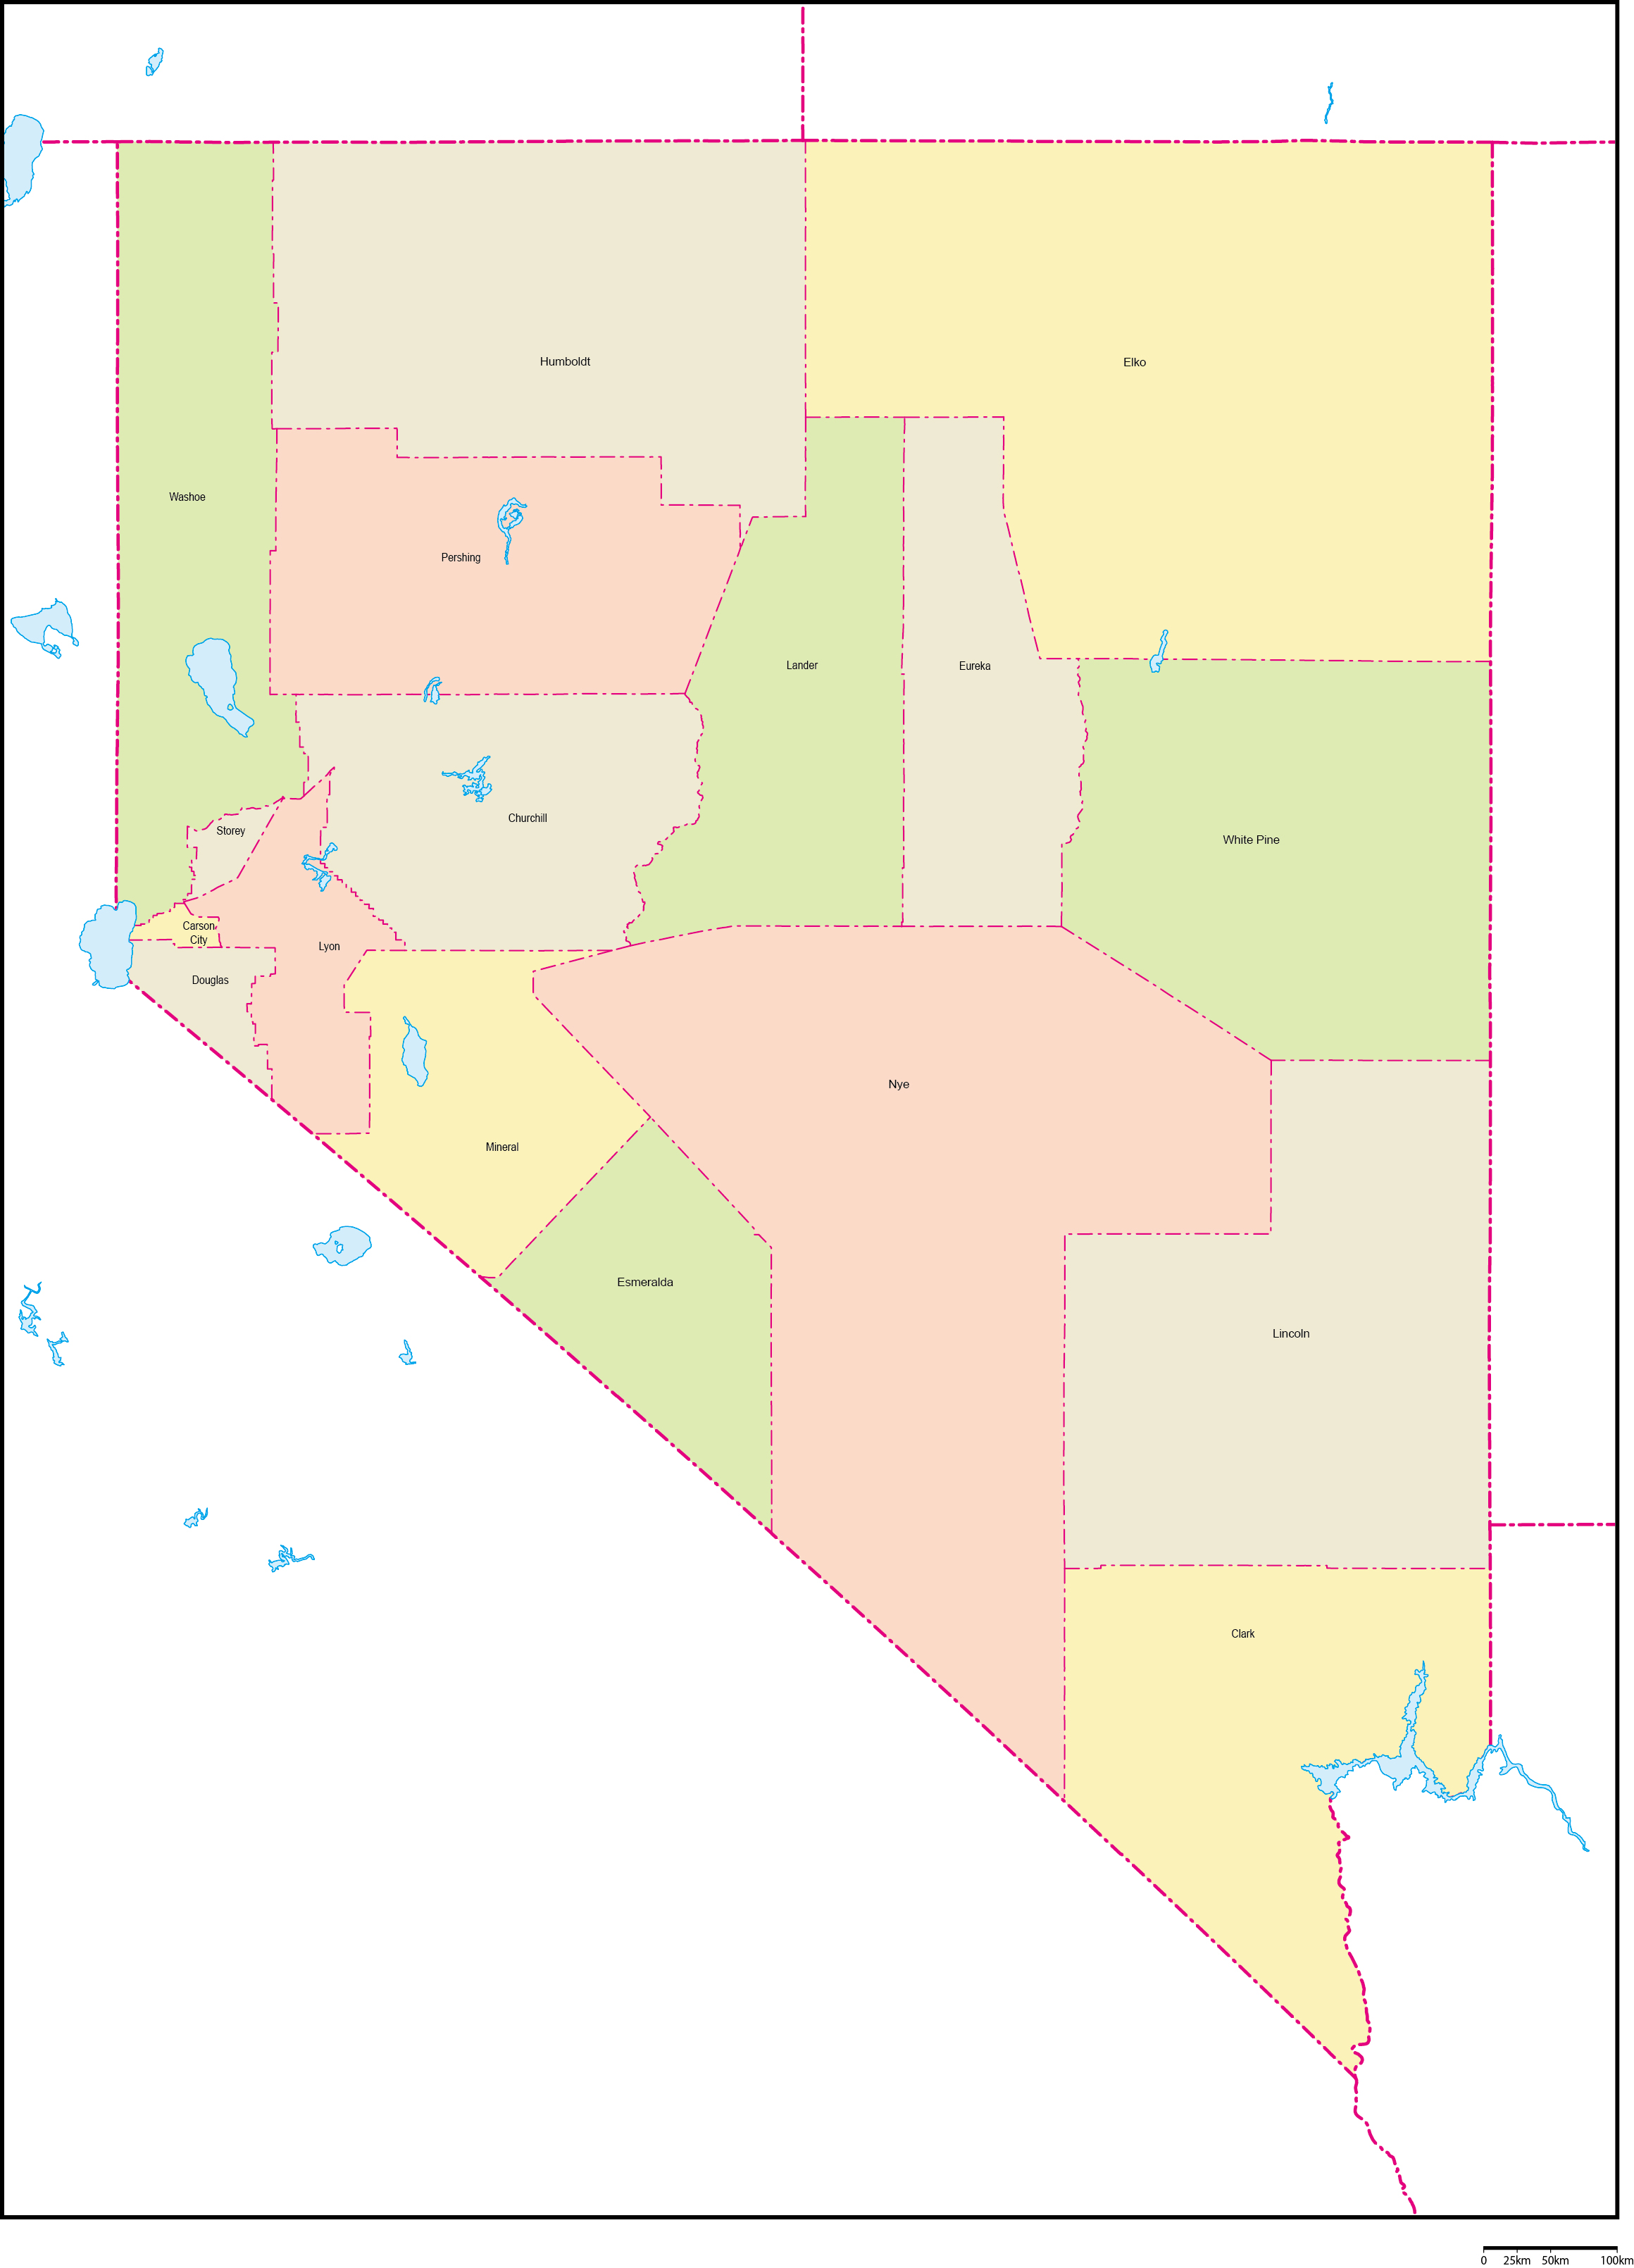 ネバダ州郡色分け地図郡名あり(英語)フリーデータの画像